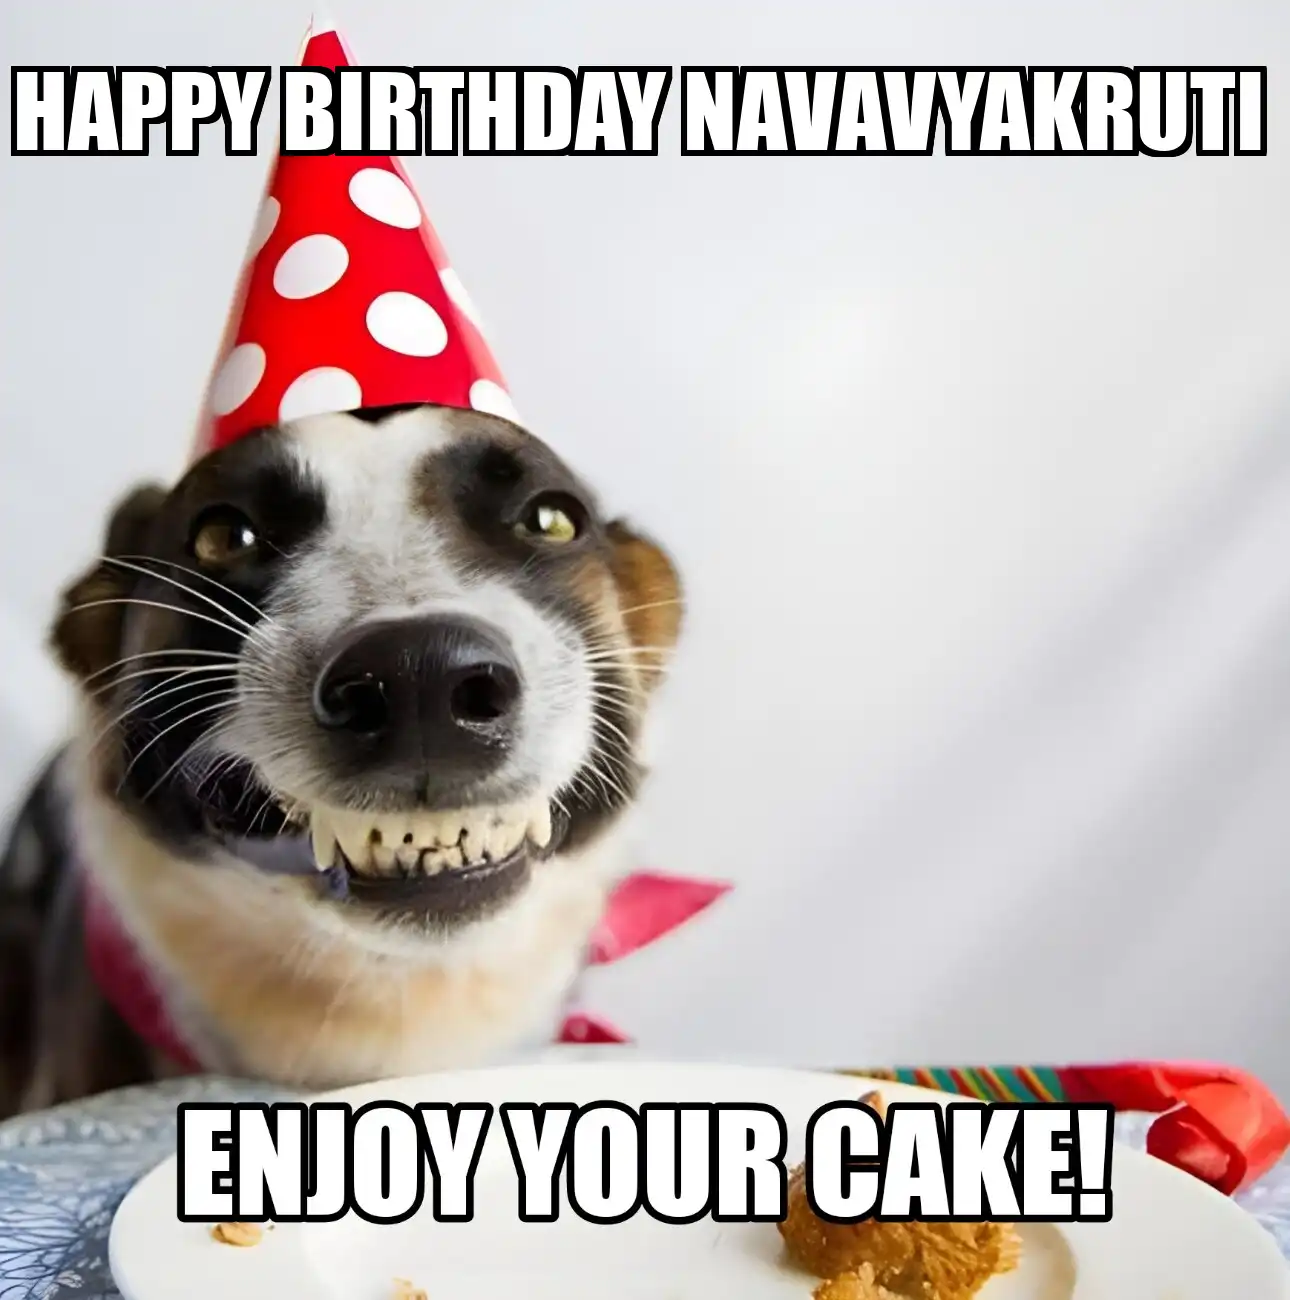 Happy Birthday Navavyakruti Enjoy Your Cake Dog Meme